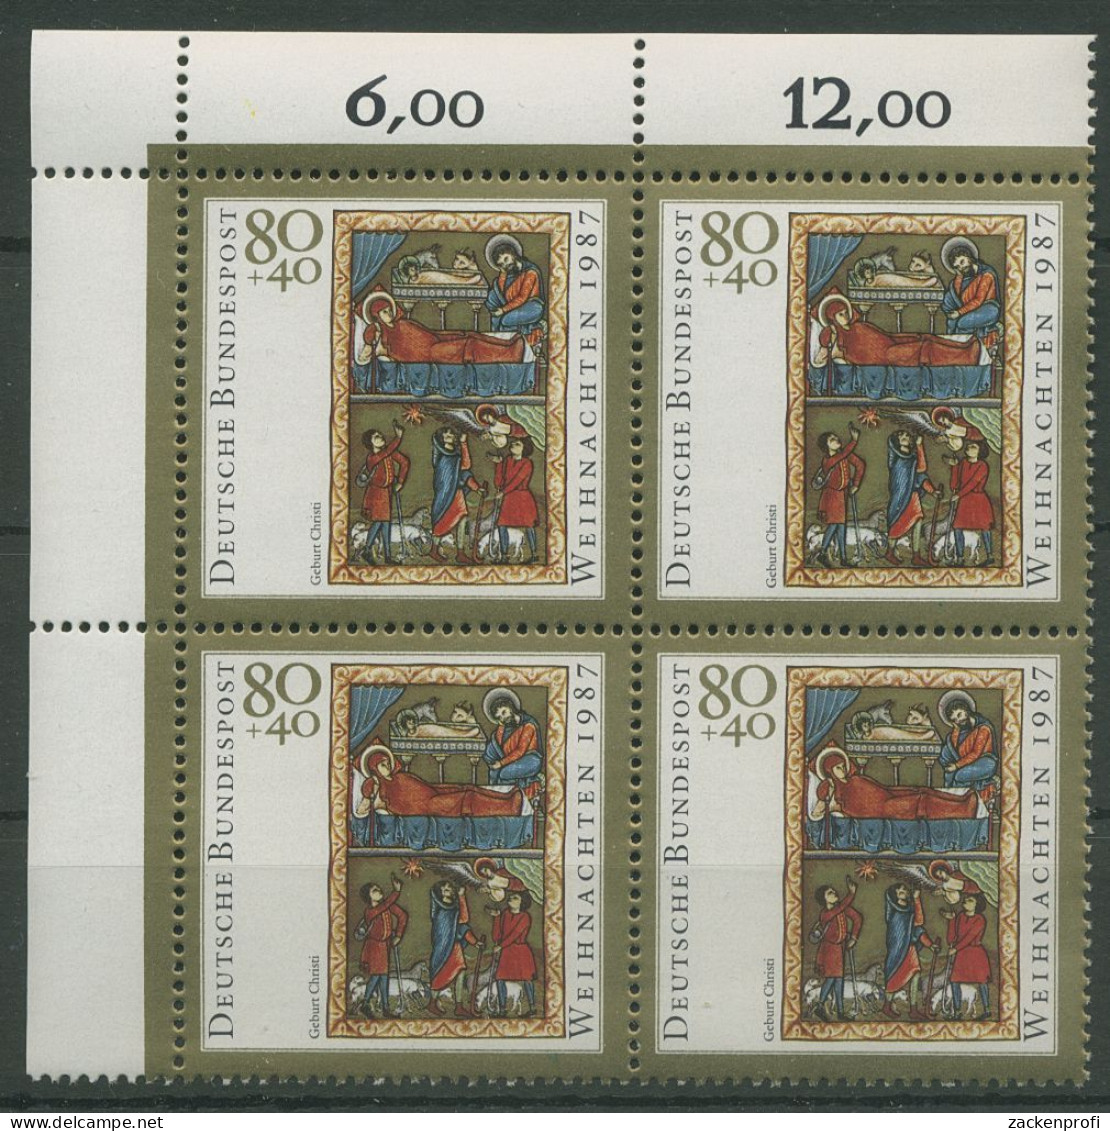 Bund 1987 Weihnachten Miniatur 1346 4er-Block Ecke 1 Postfrisch (R80206) - Ungebraucht